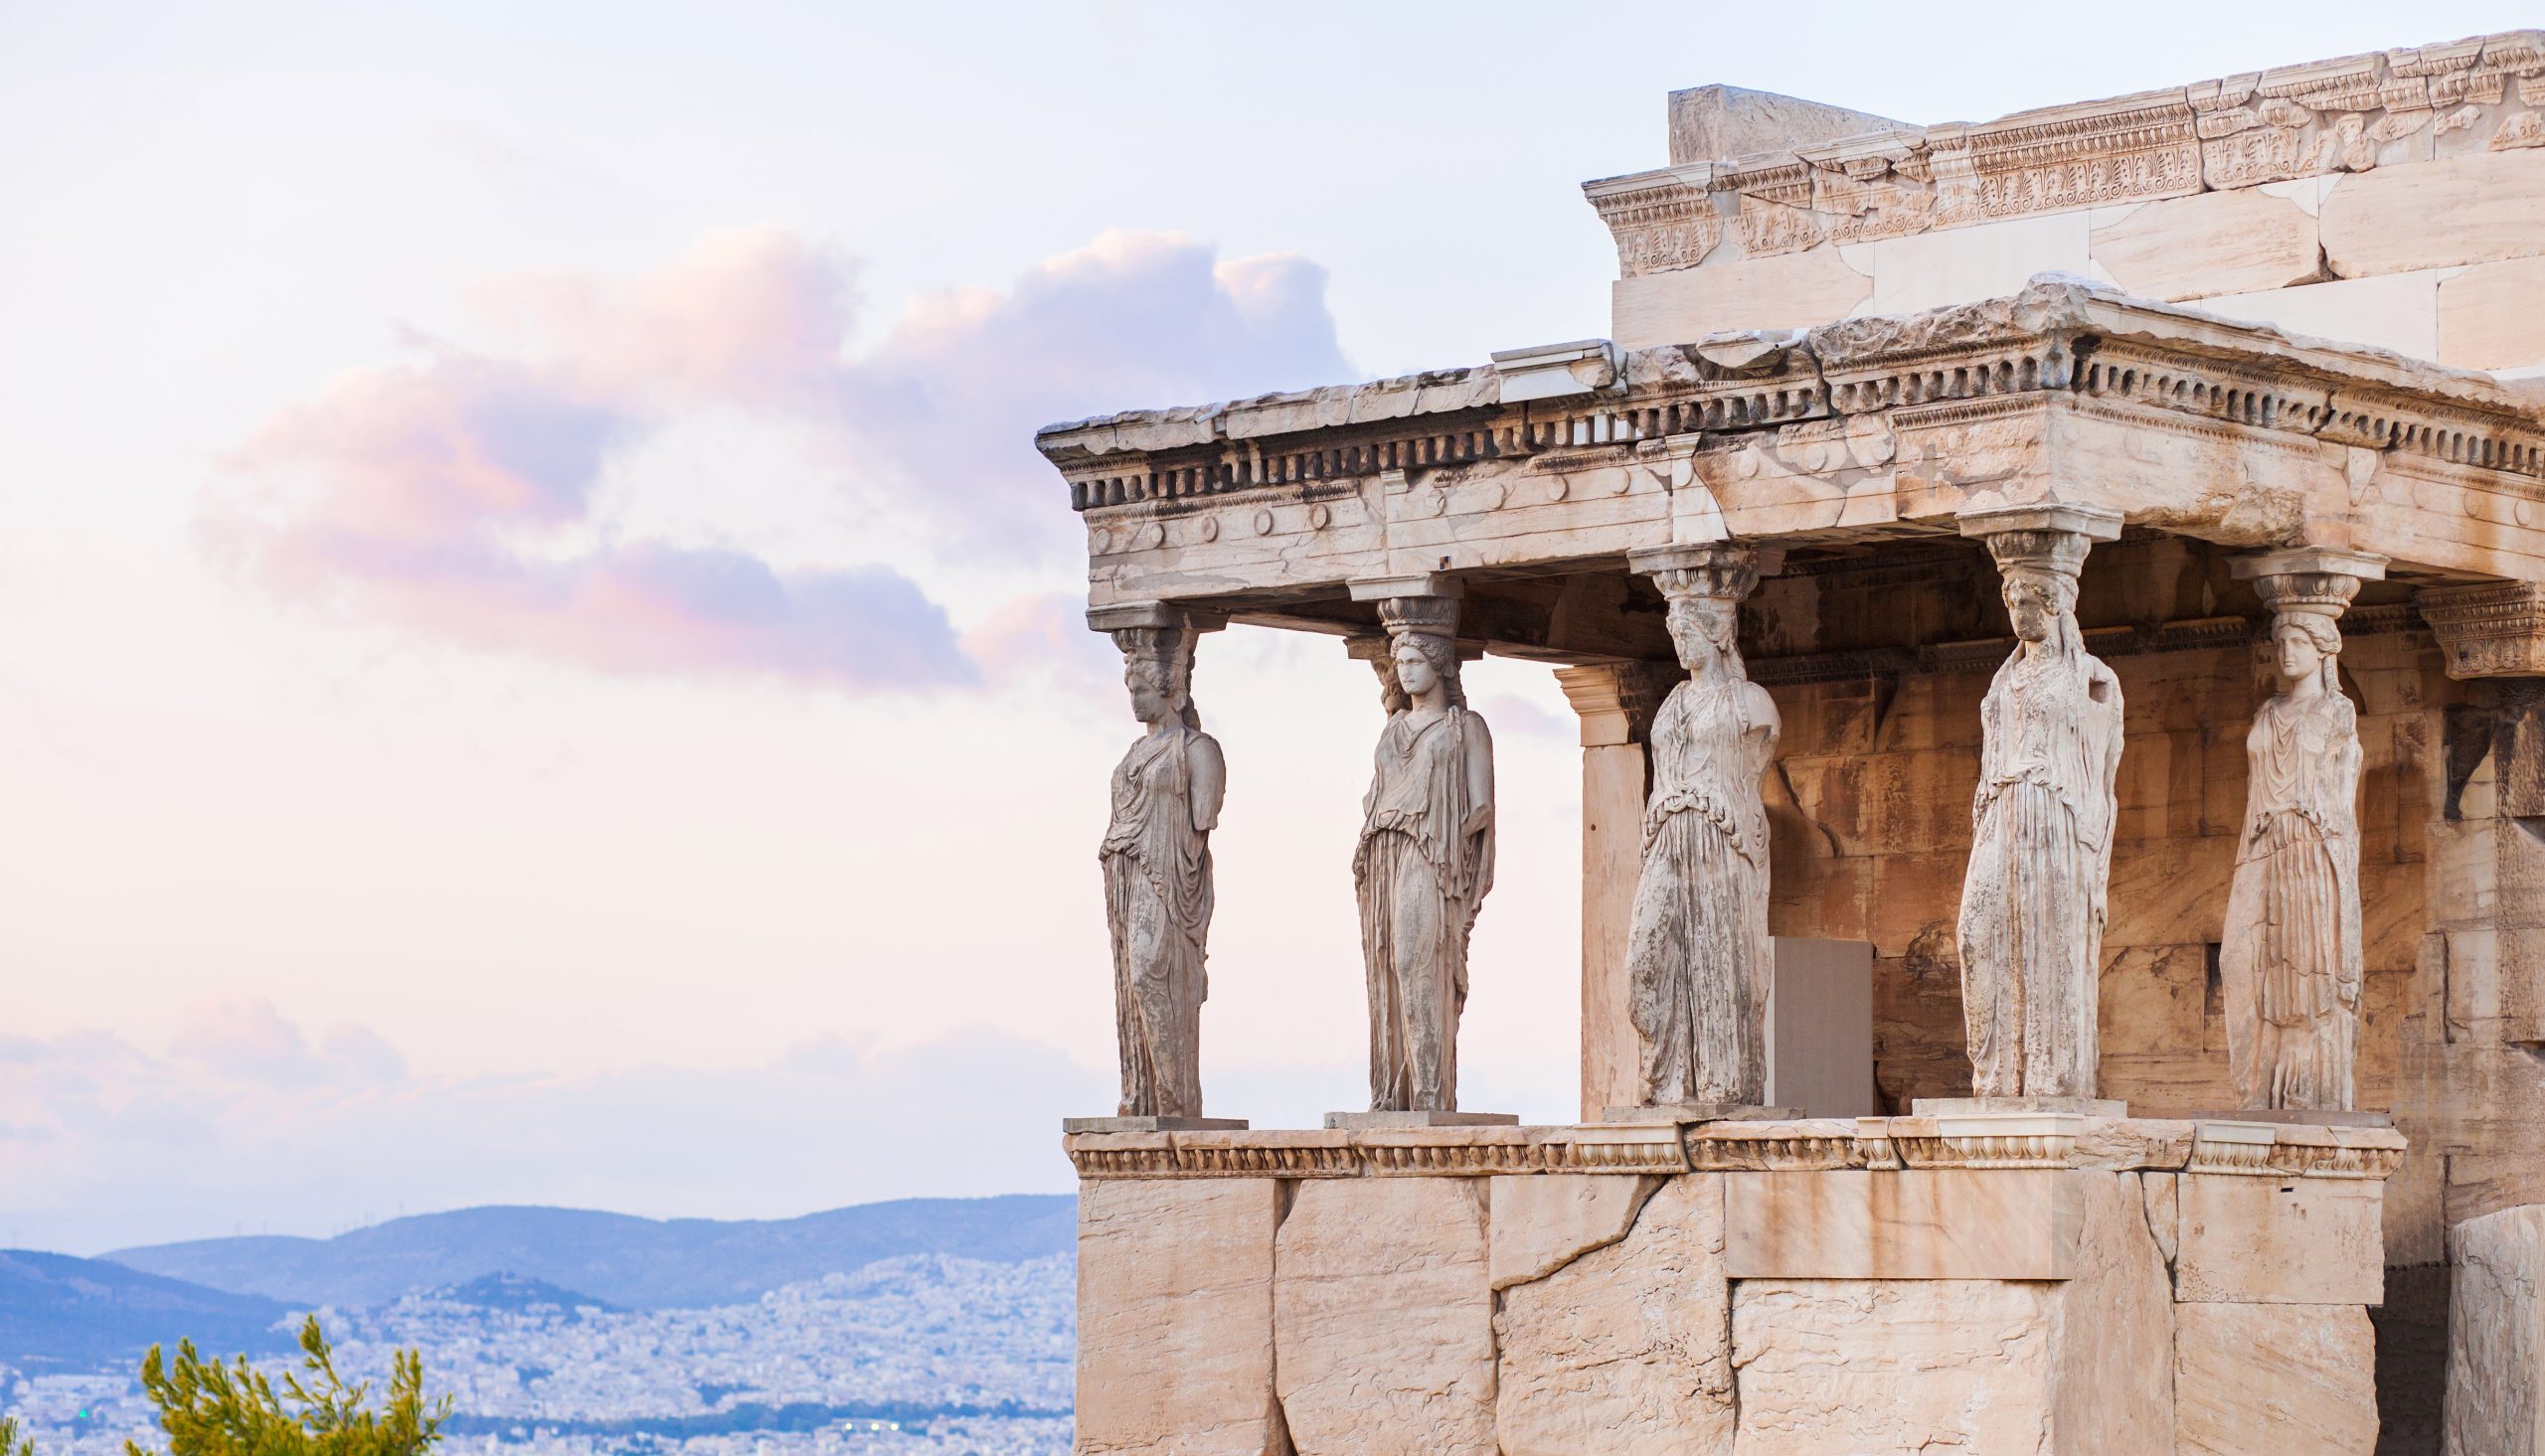 Die Antike in Griechenland erleben mit REISEBÜRO Wache, Erfurt; im Bild: Säulenfiguren am Tempel auf der Akropolis in Athen